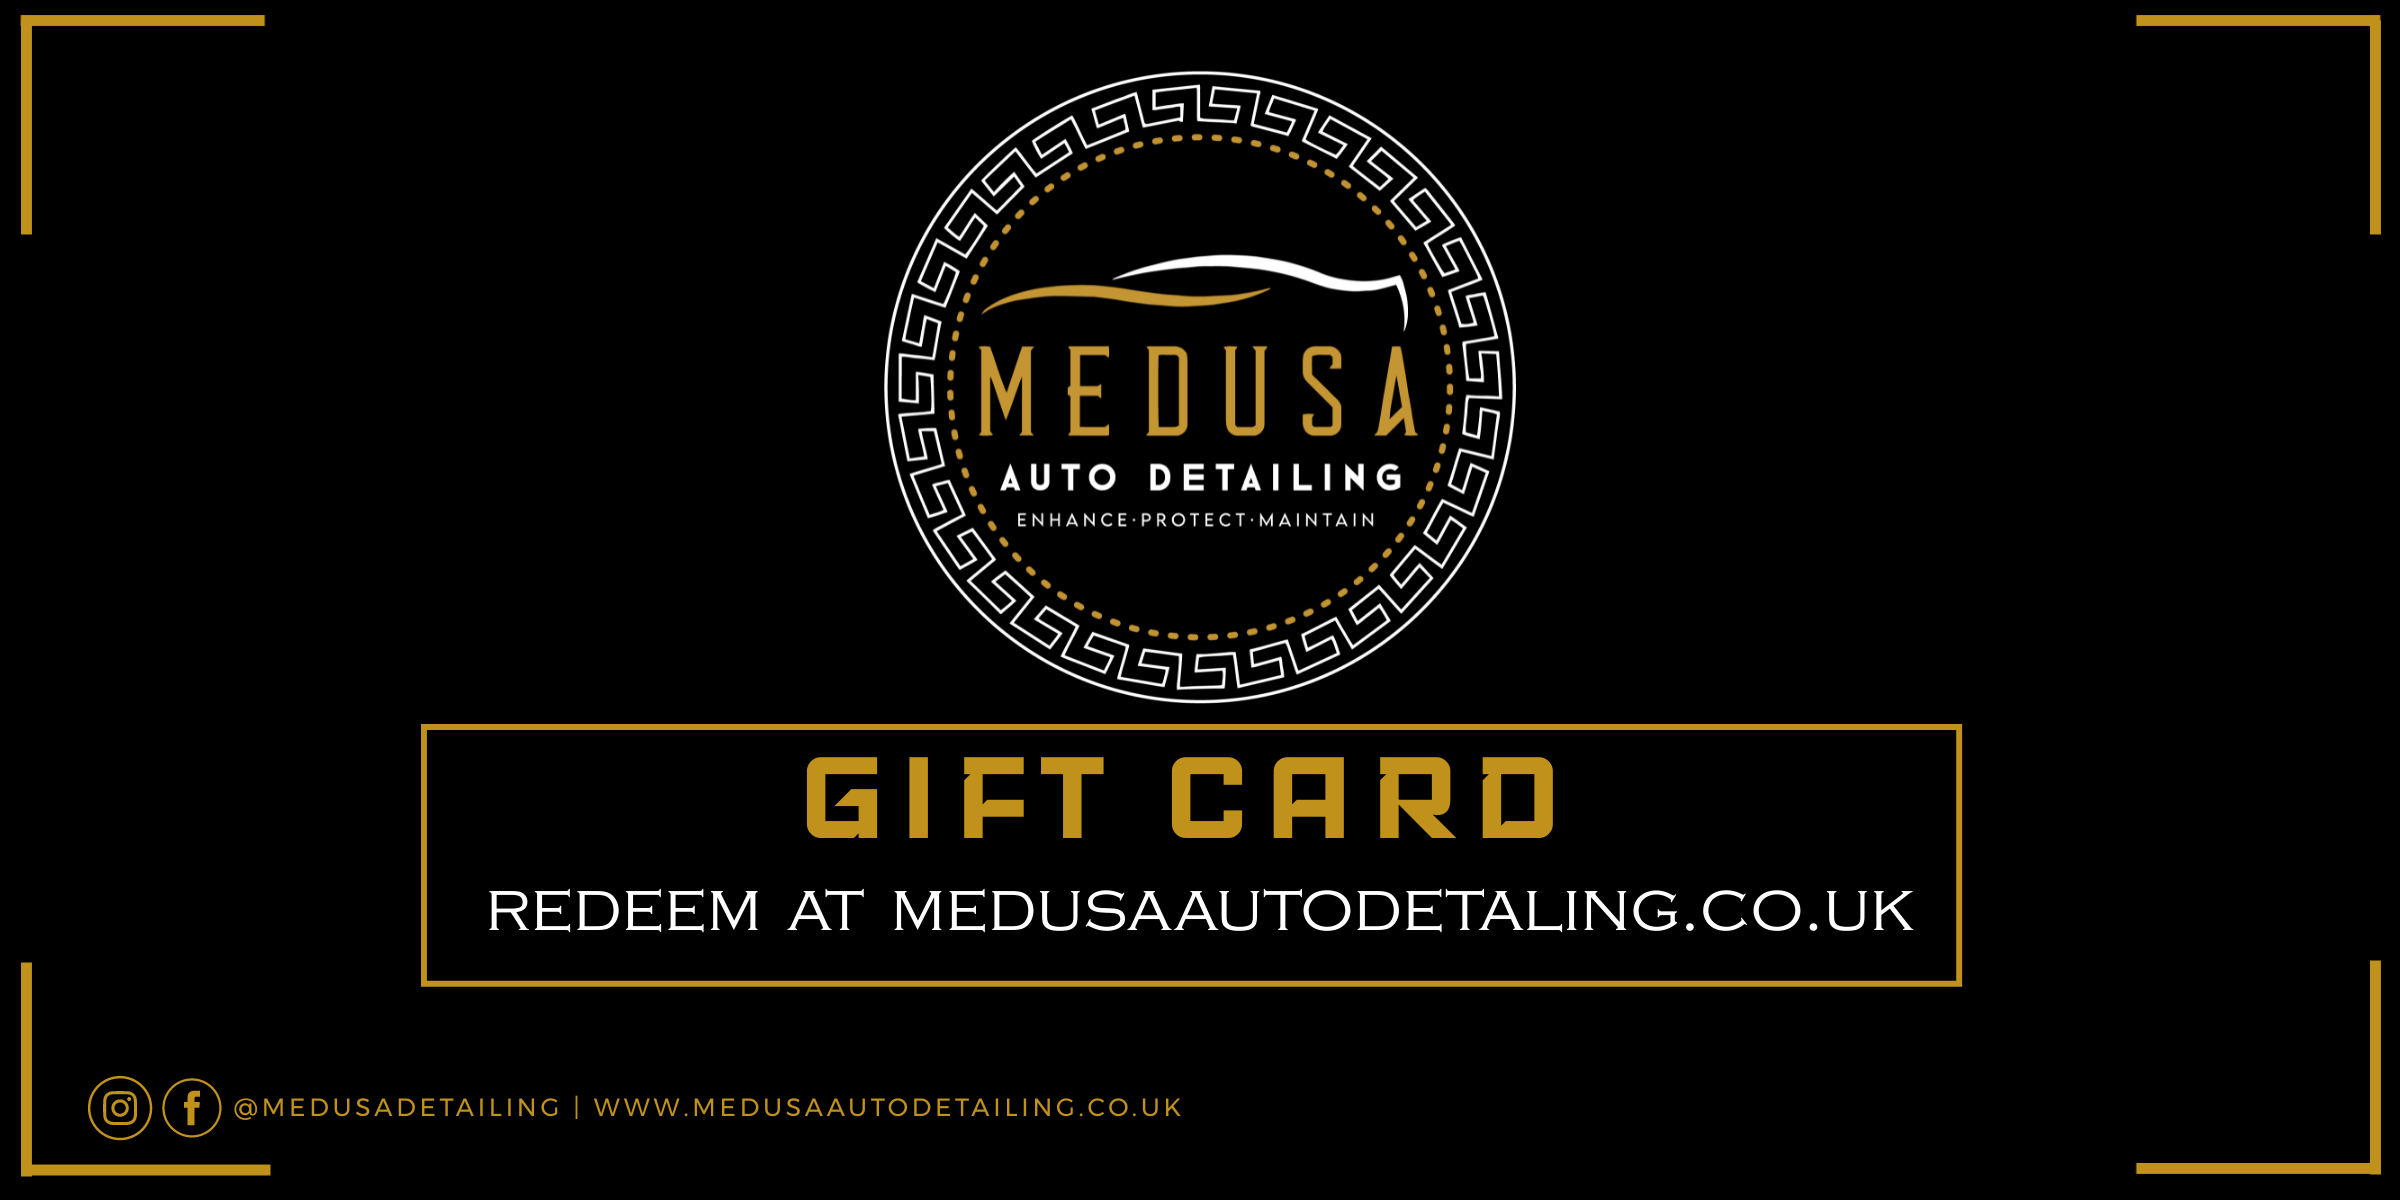 Medusa Gift Card